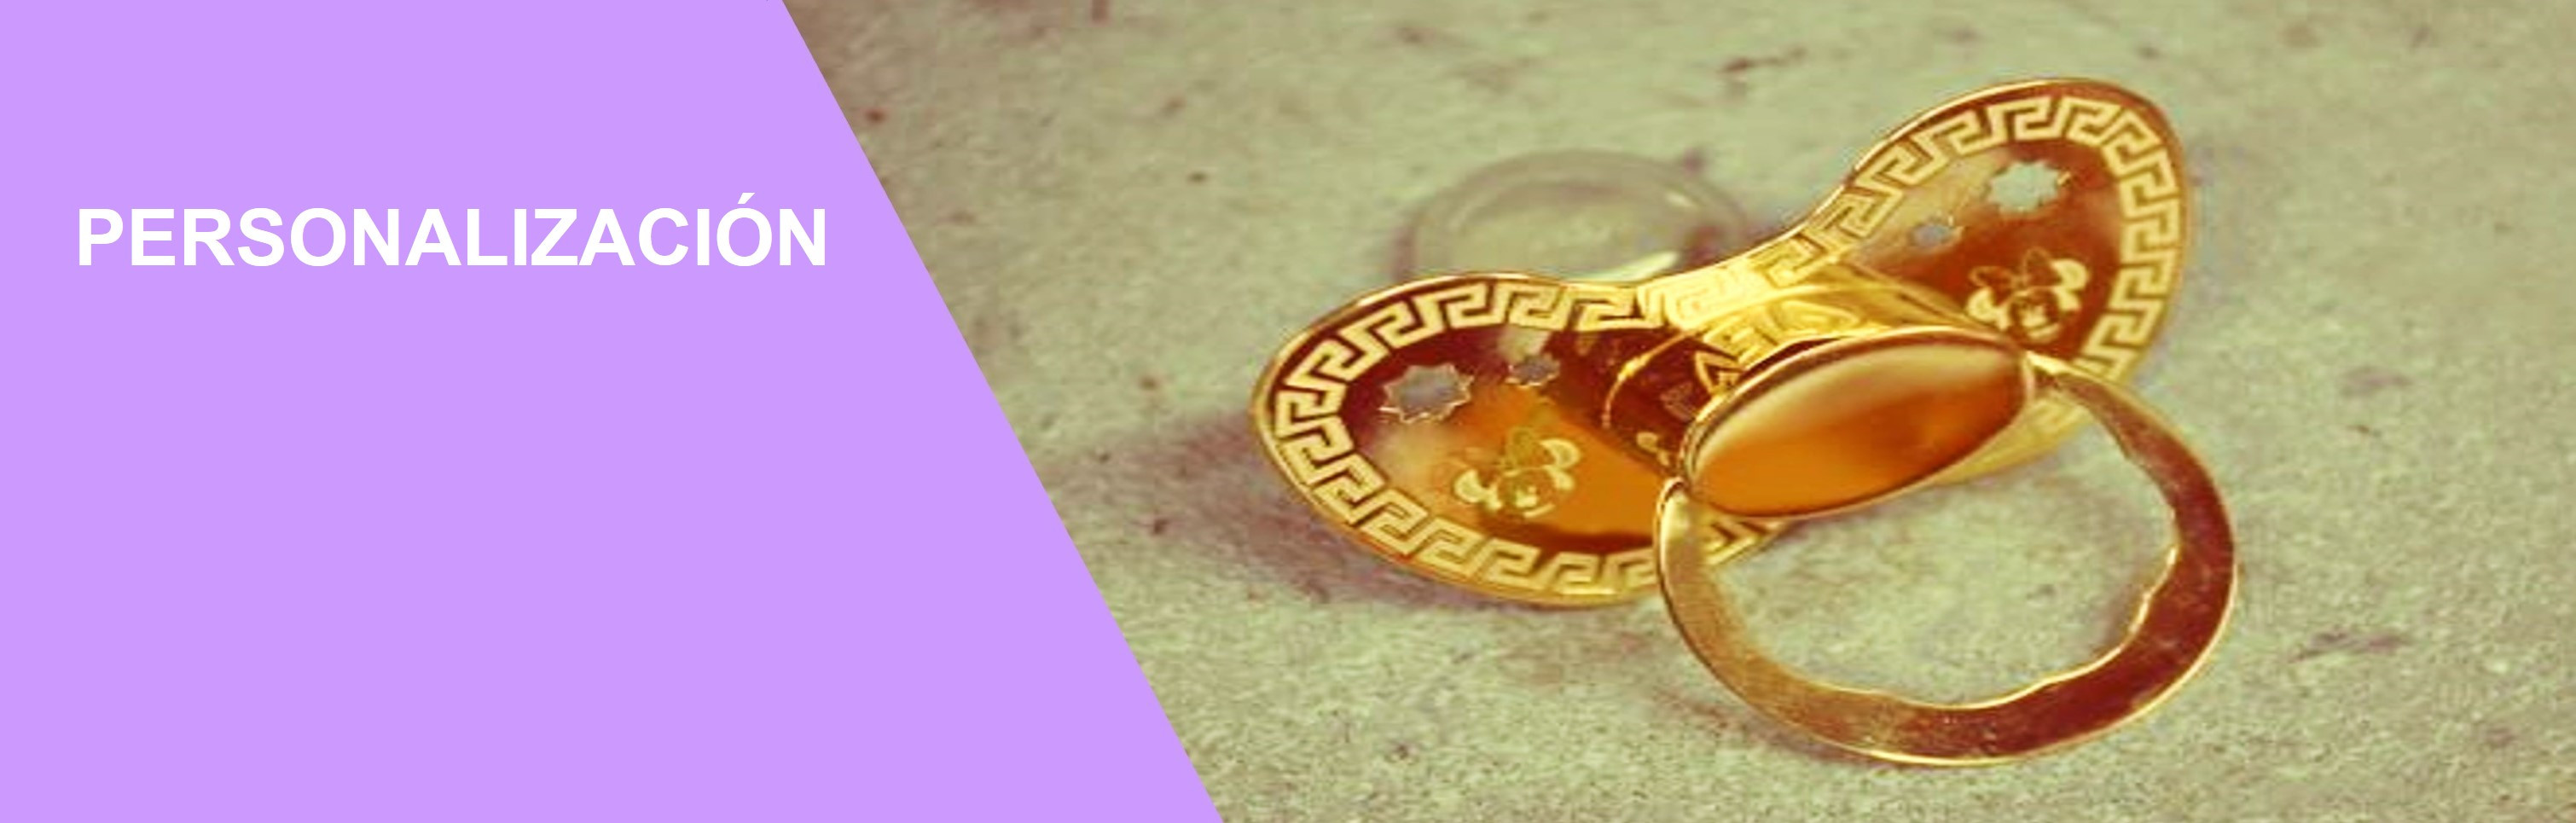 Pieza de chupete de oro encargada de forma personalizada. Diseñada y producida por Mega Joyas.